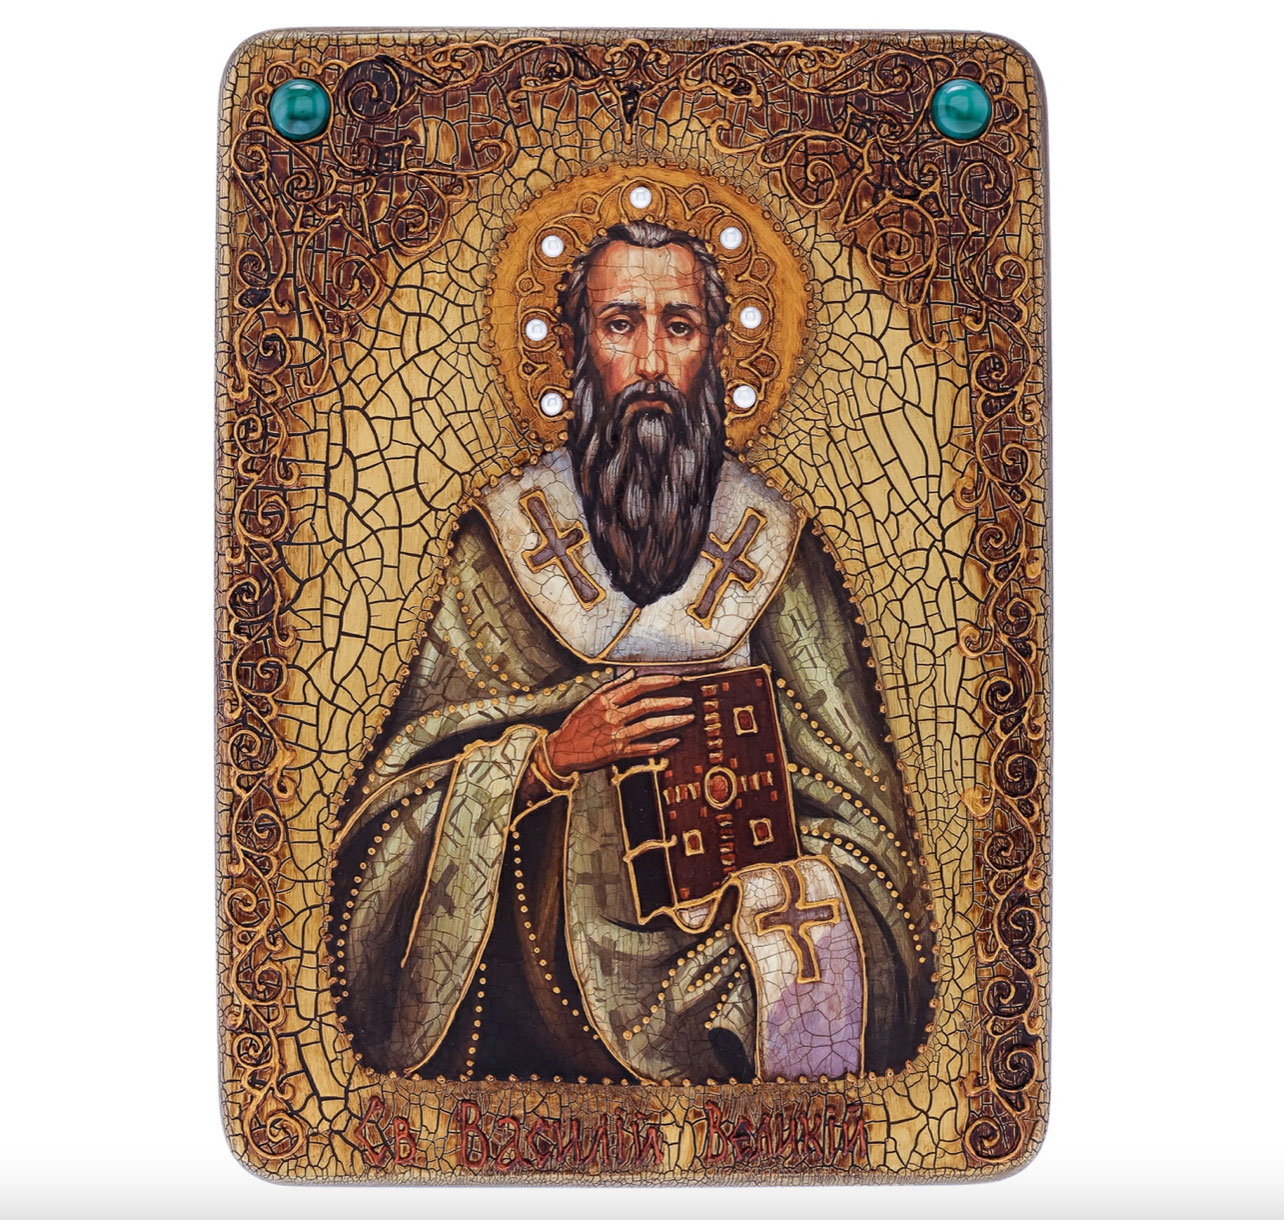 Аналойная икона "Святой Василий Великий" на мореном дубе - артикул: 802258 | Мосподарок 